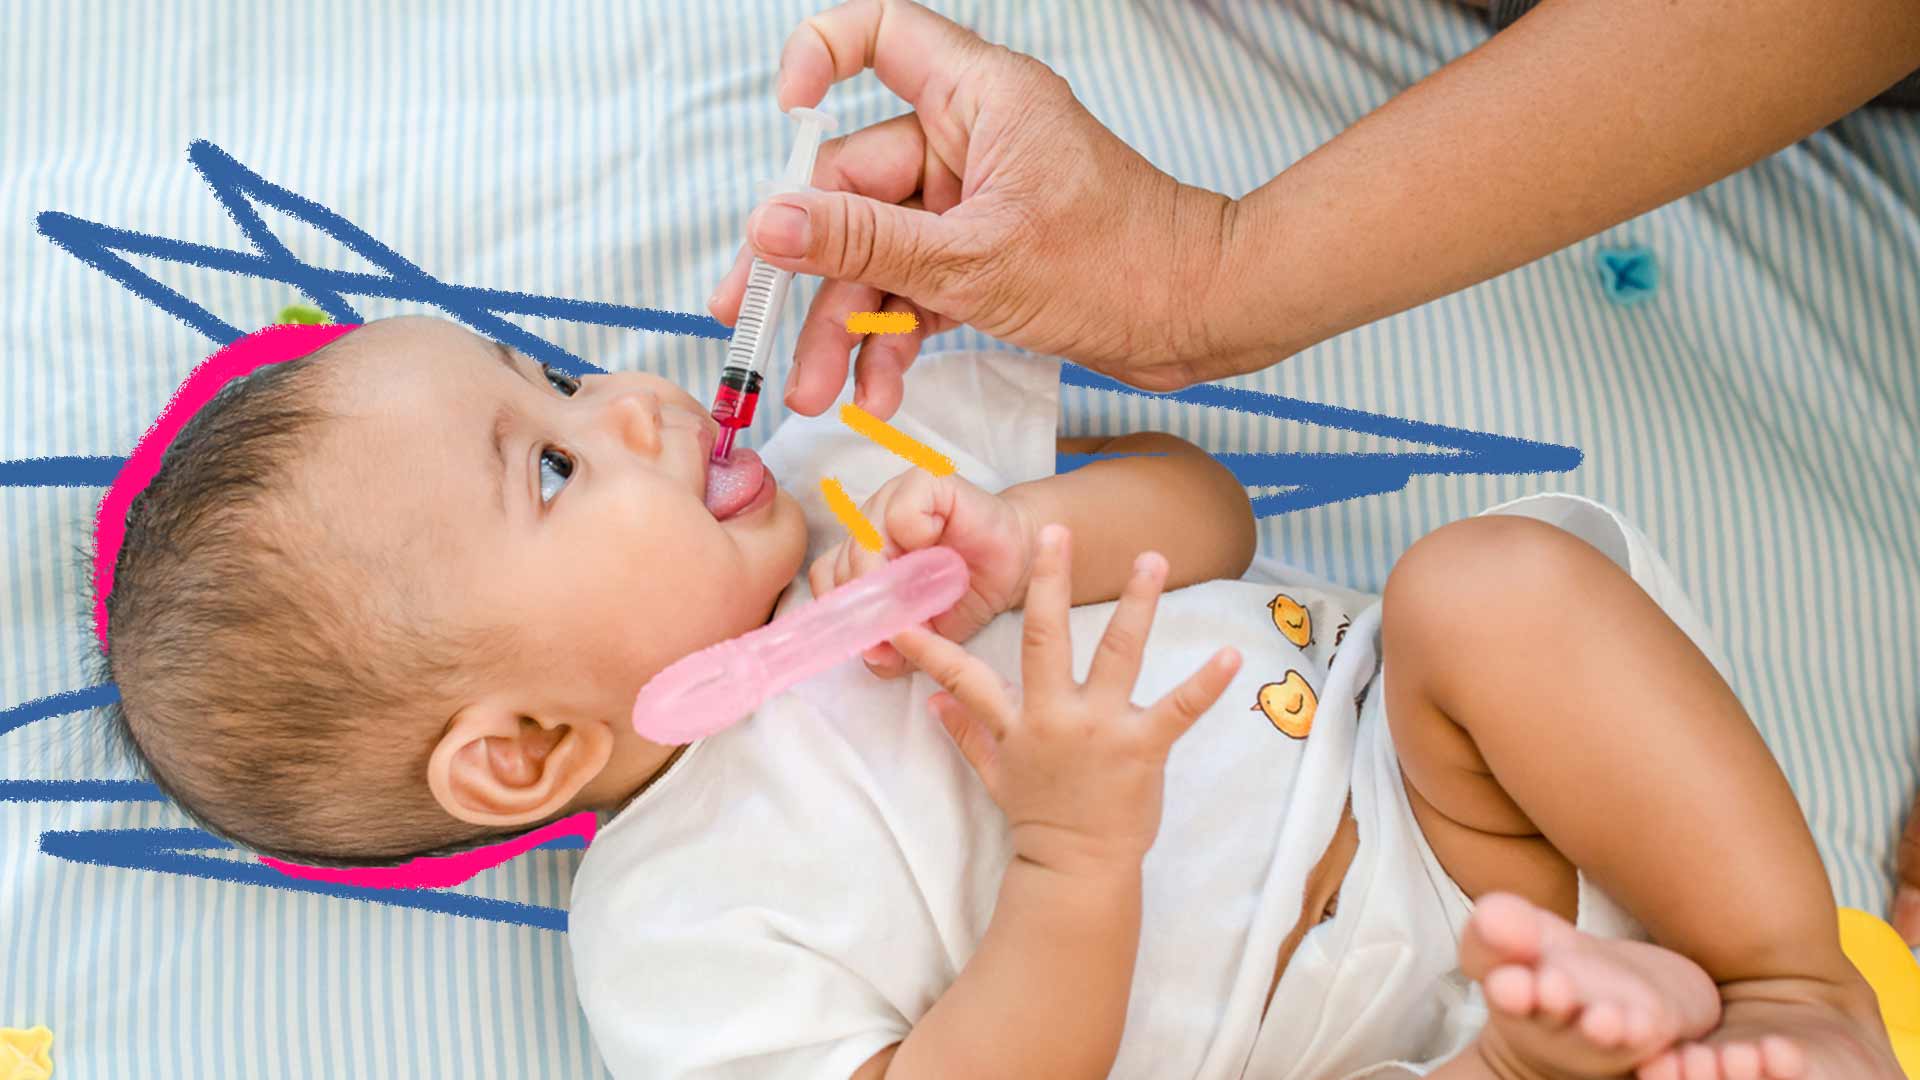 Imagem de bebê deitado em uma cama e uma mão dando uma seringa com remédio na sua boca